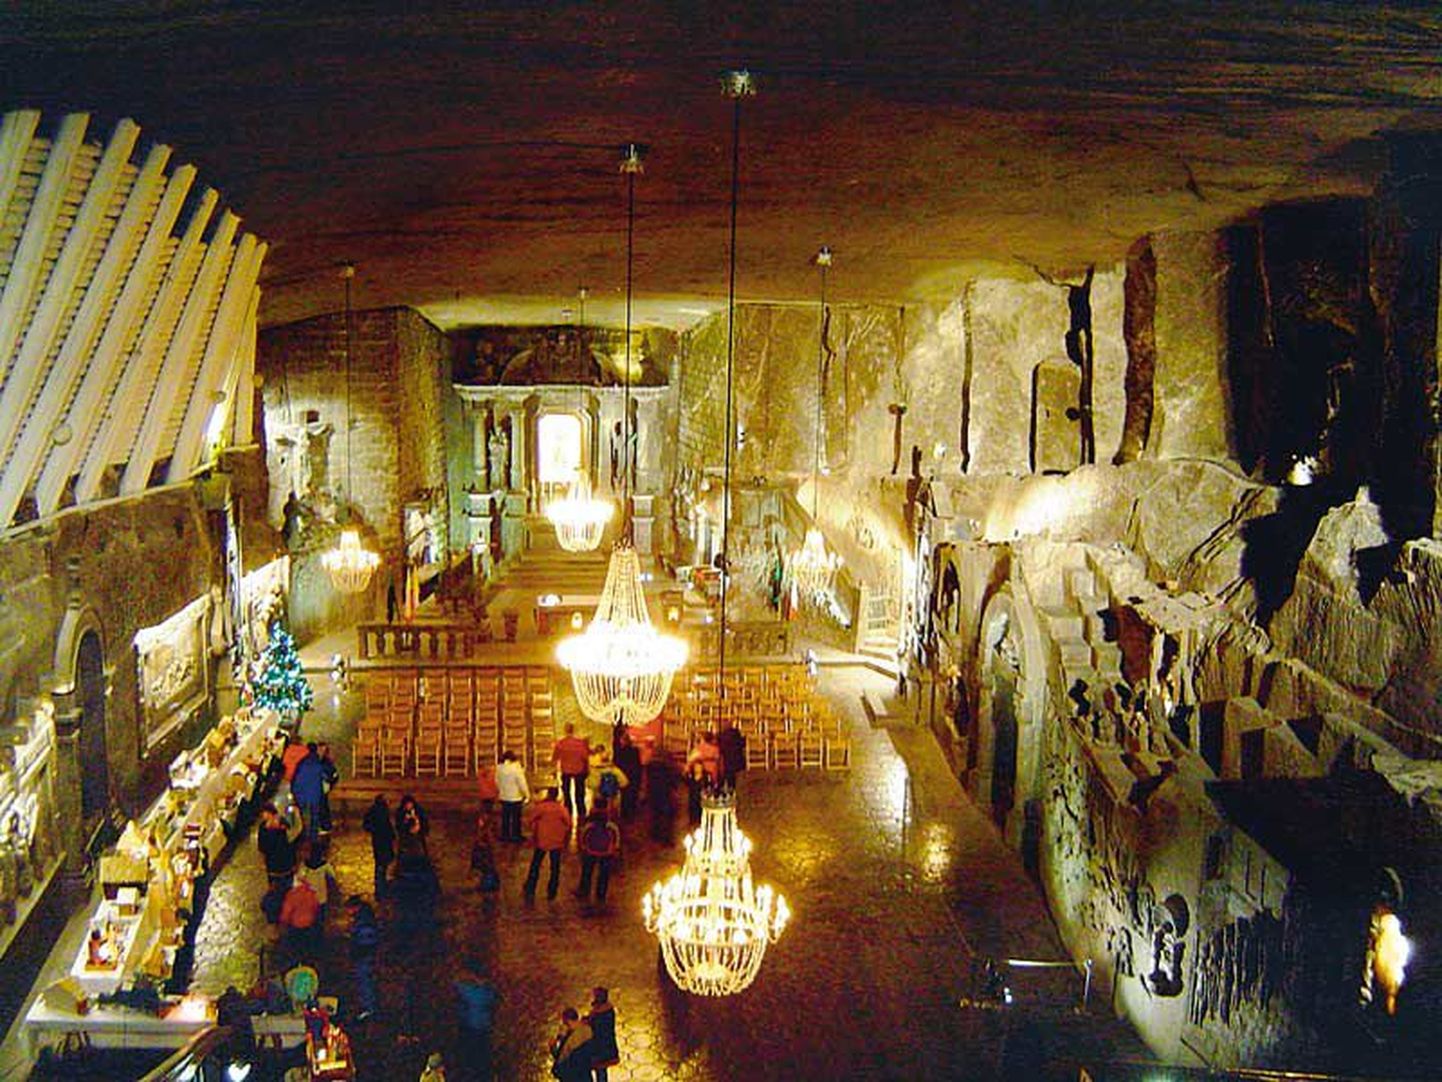 Muuseumi suurhall. UNESCO kultuuripärandi nimekirja kantud soolakaevandus on vägagi populaarne turismimagnet, eelmisel aastal külastas seda 900 000 turisti.